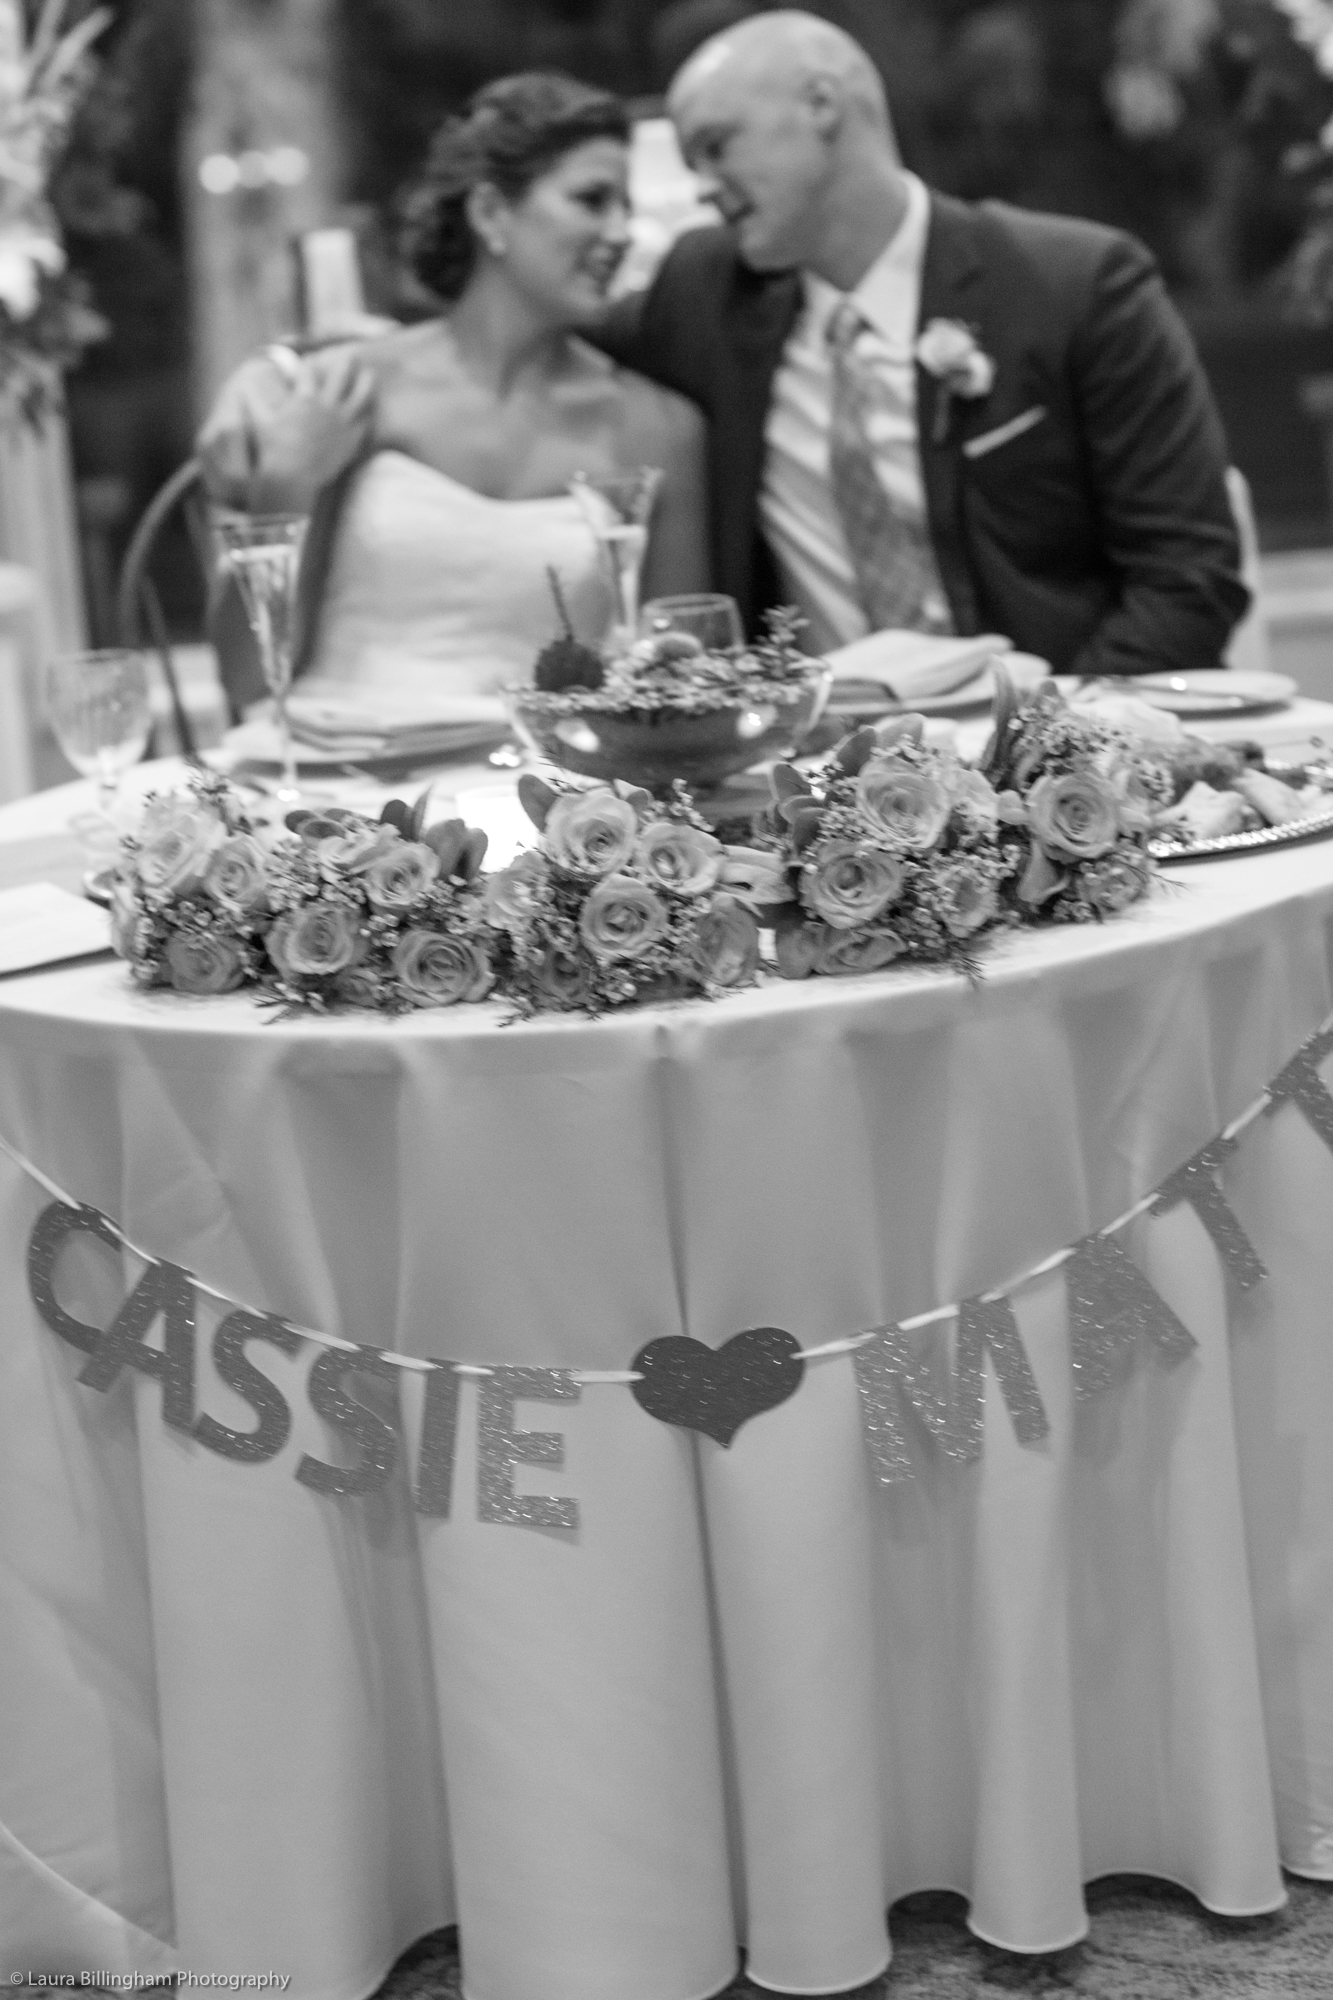 Matt & Cassie - Wedding Photography in the Poconos